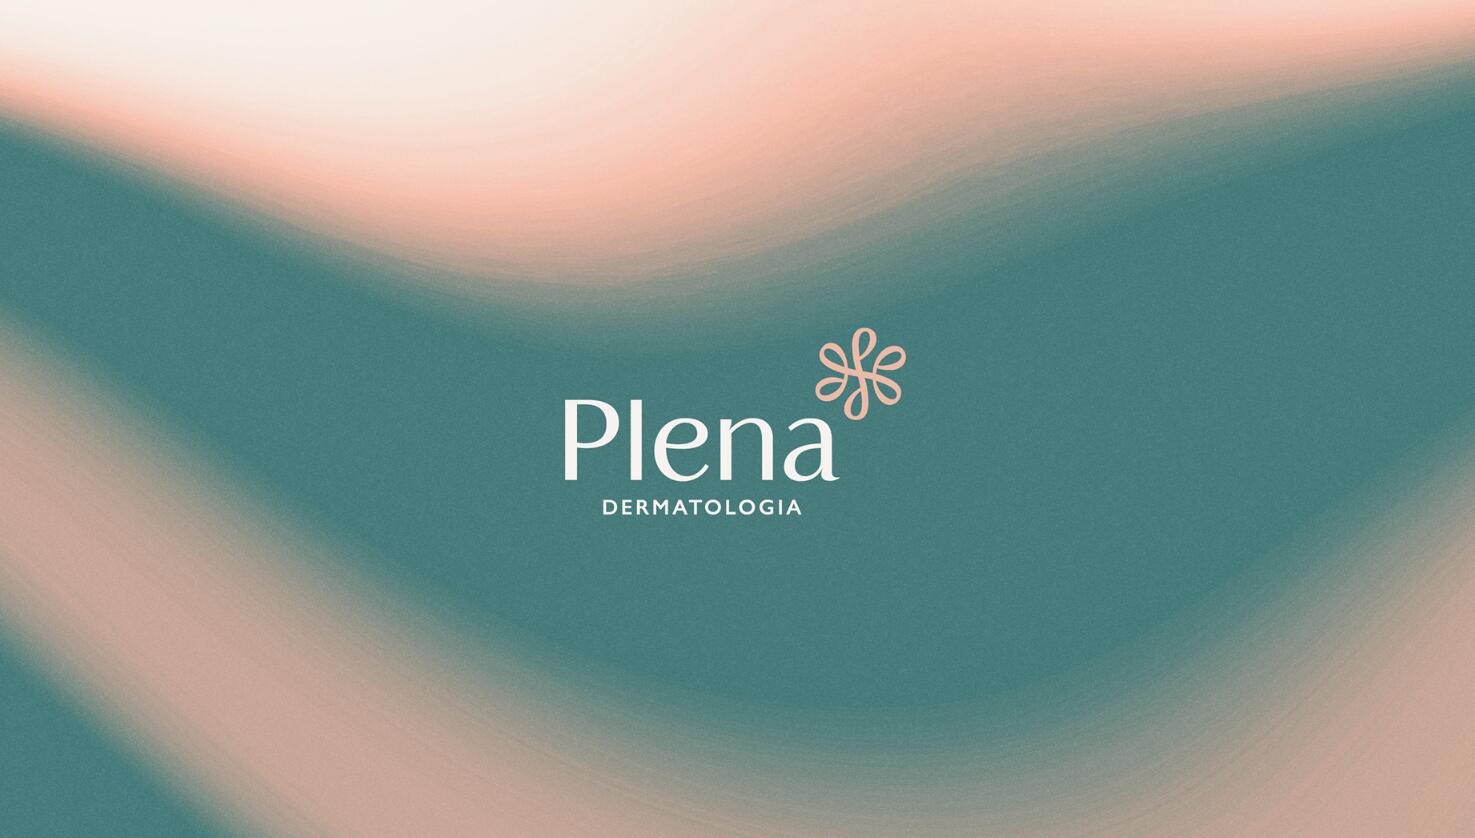 Plena皮肤科美容护理诊所logo设计品牌vi形象设计，绿粉双色渐变风格